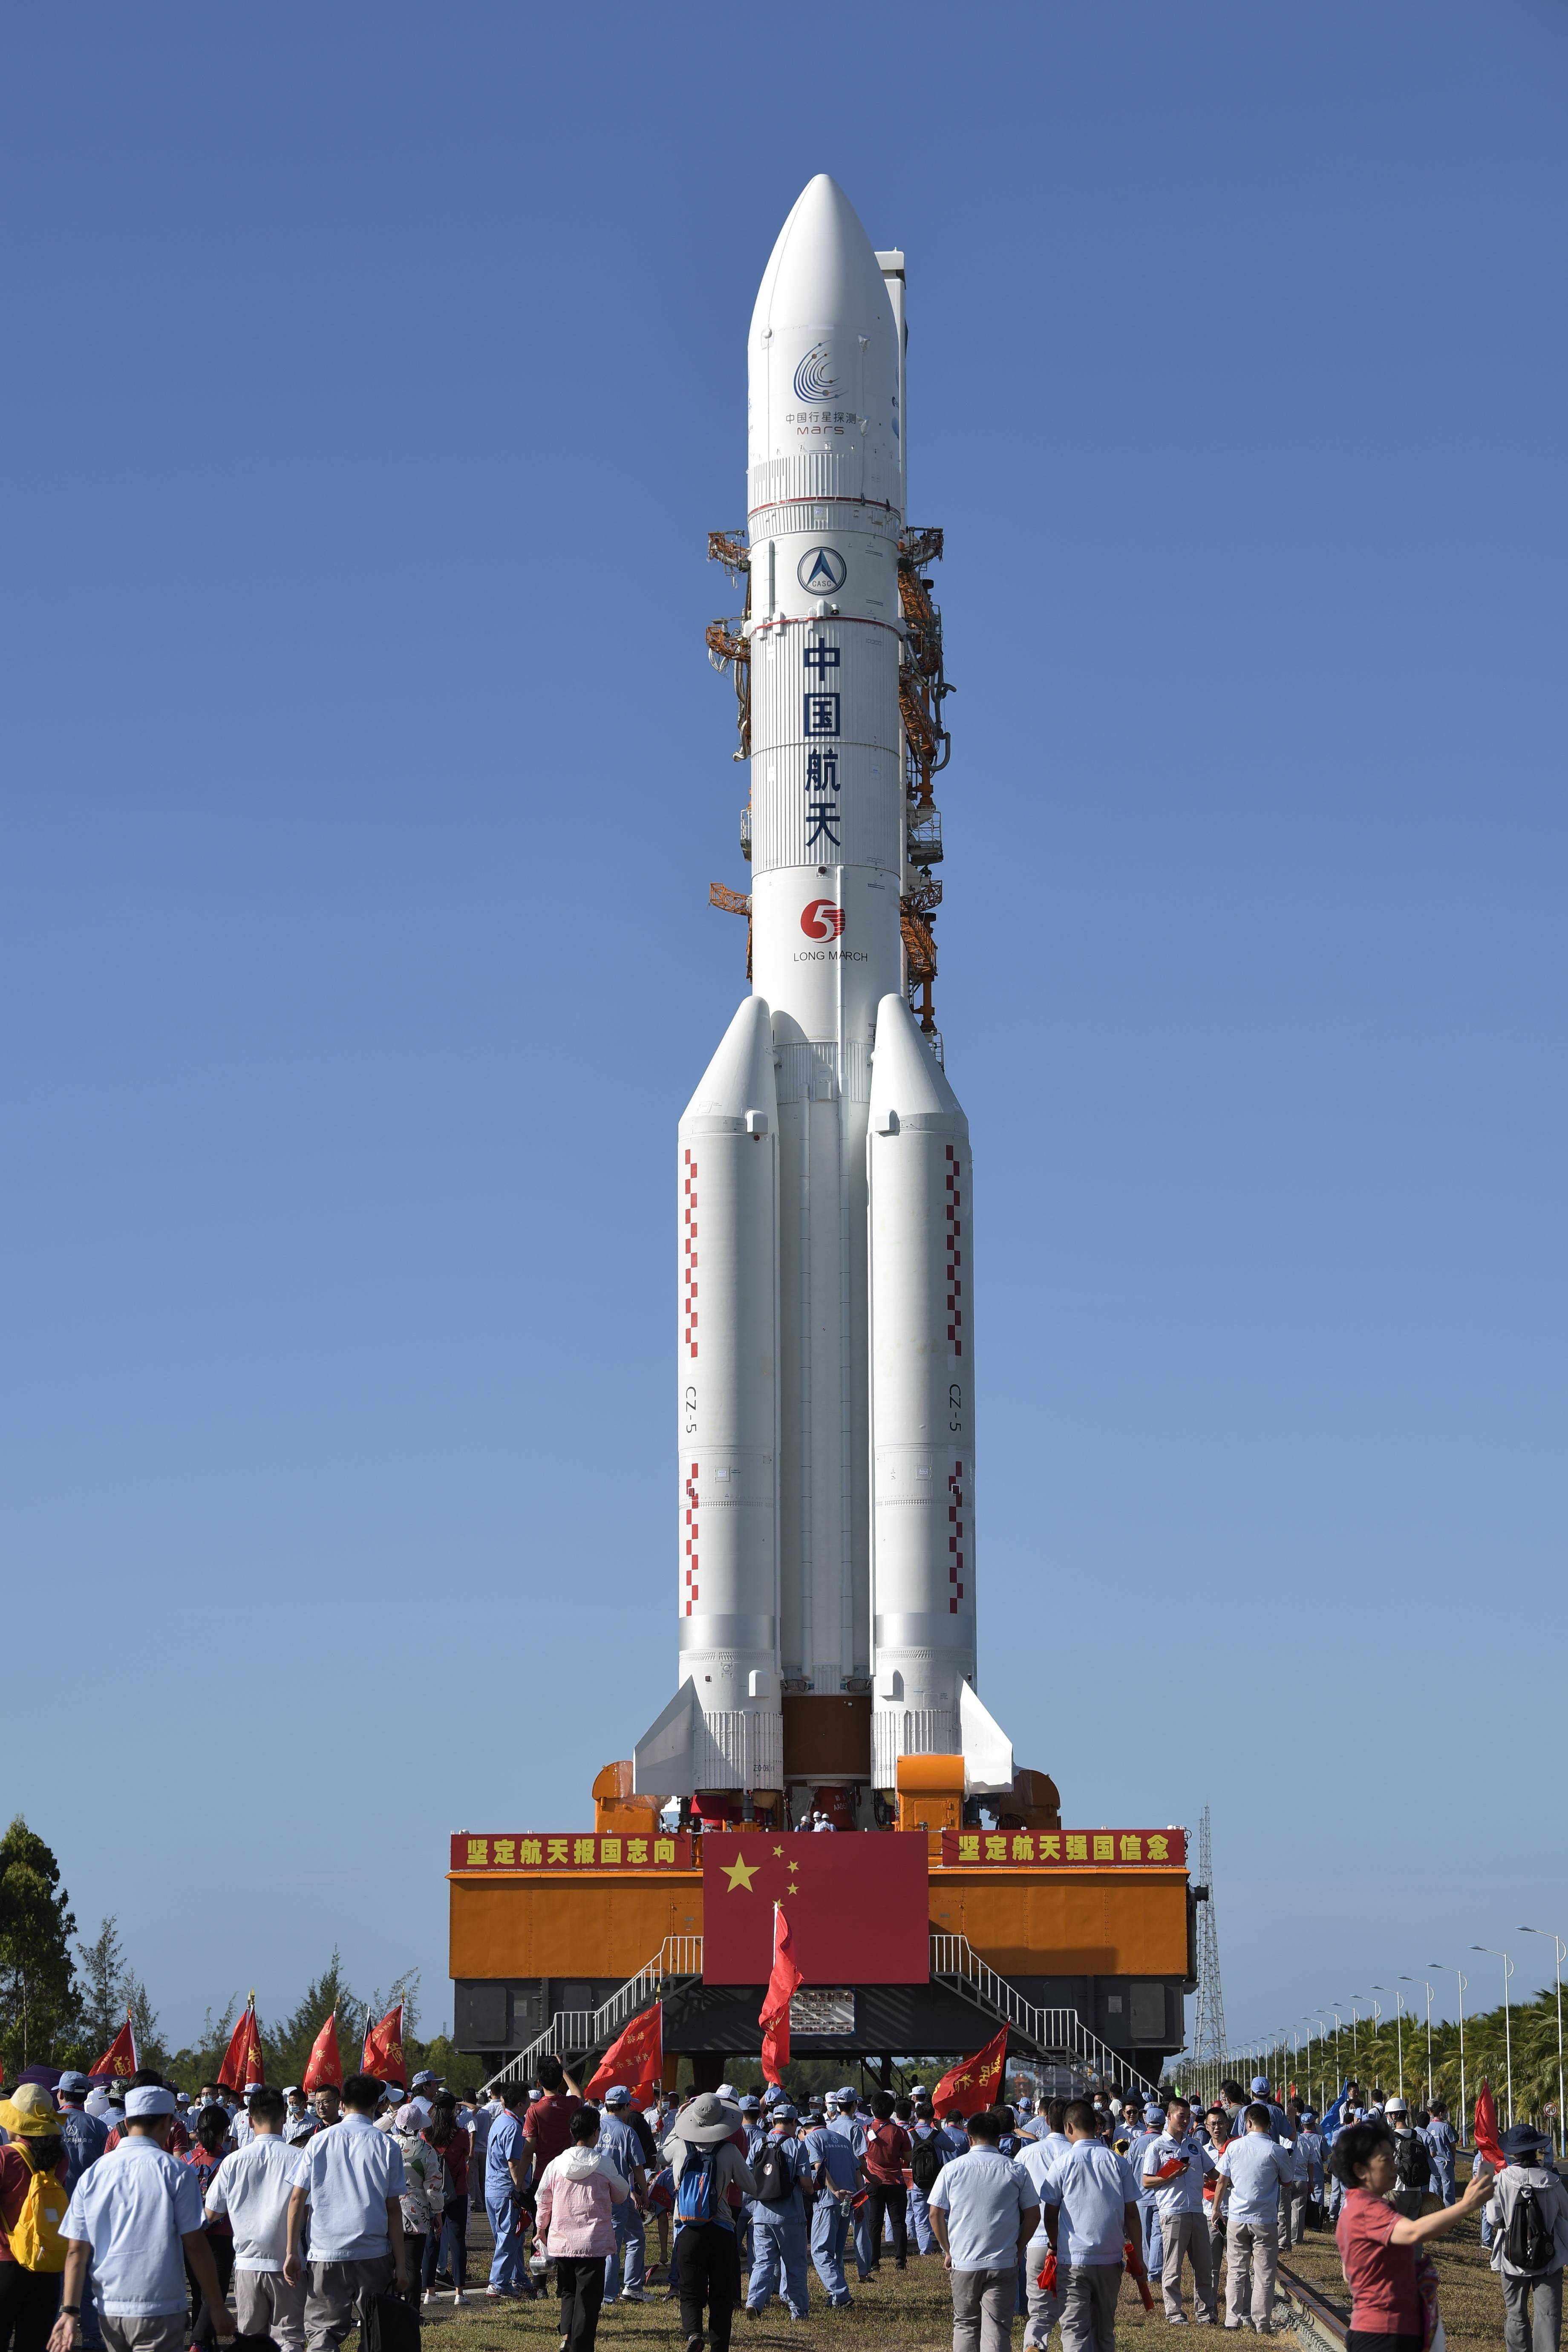 长征五号遥四运载火箭垂直转运至发射区 计划择机实施我国首次火星